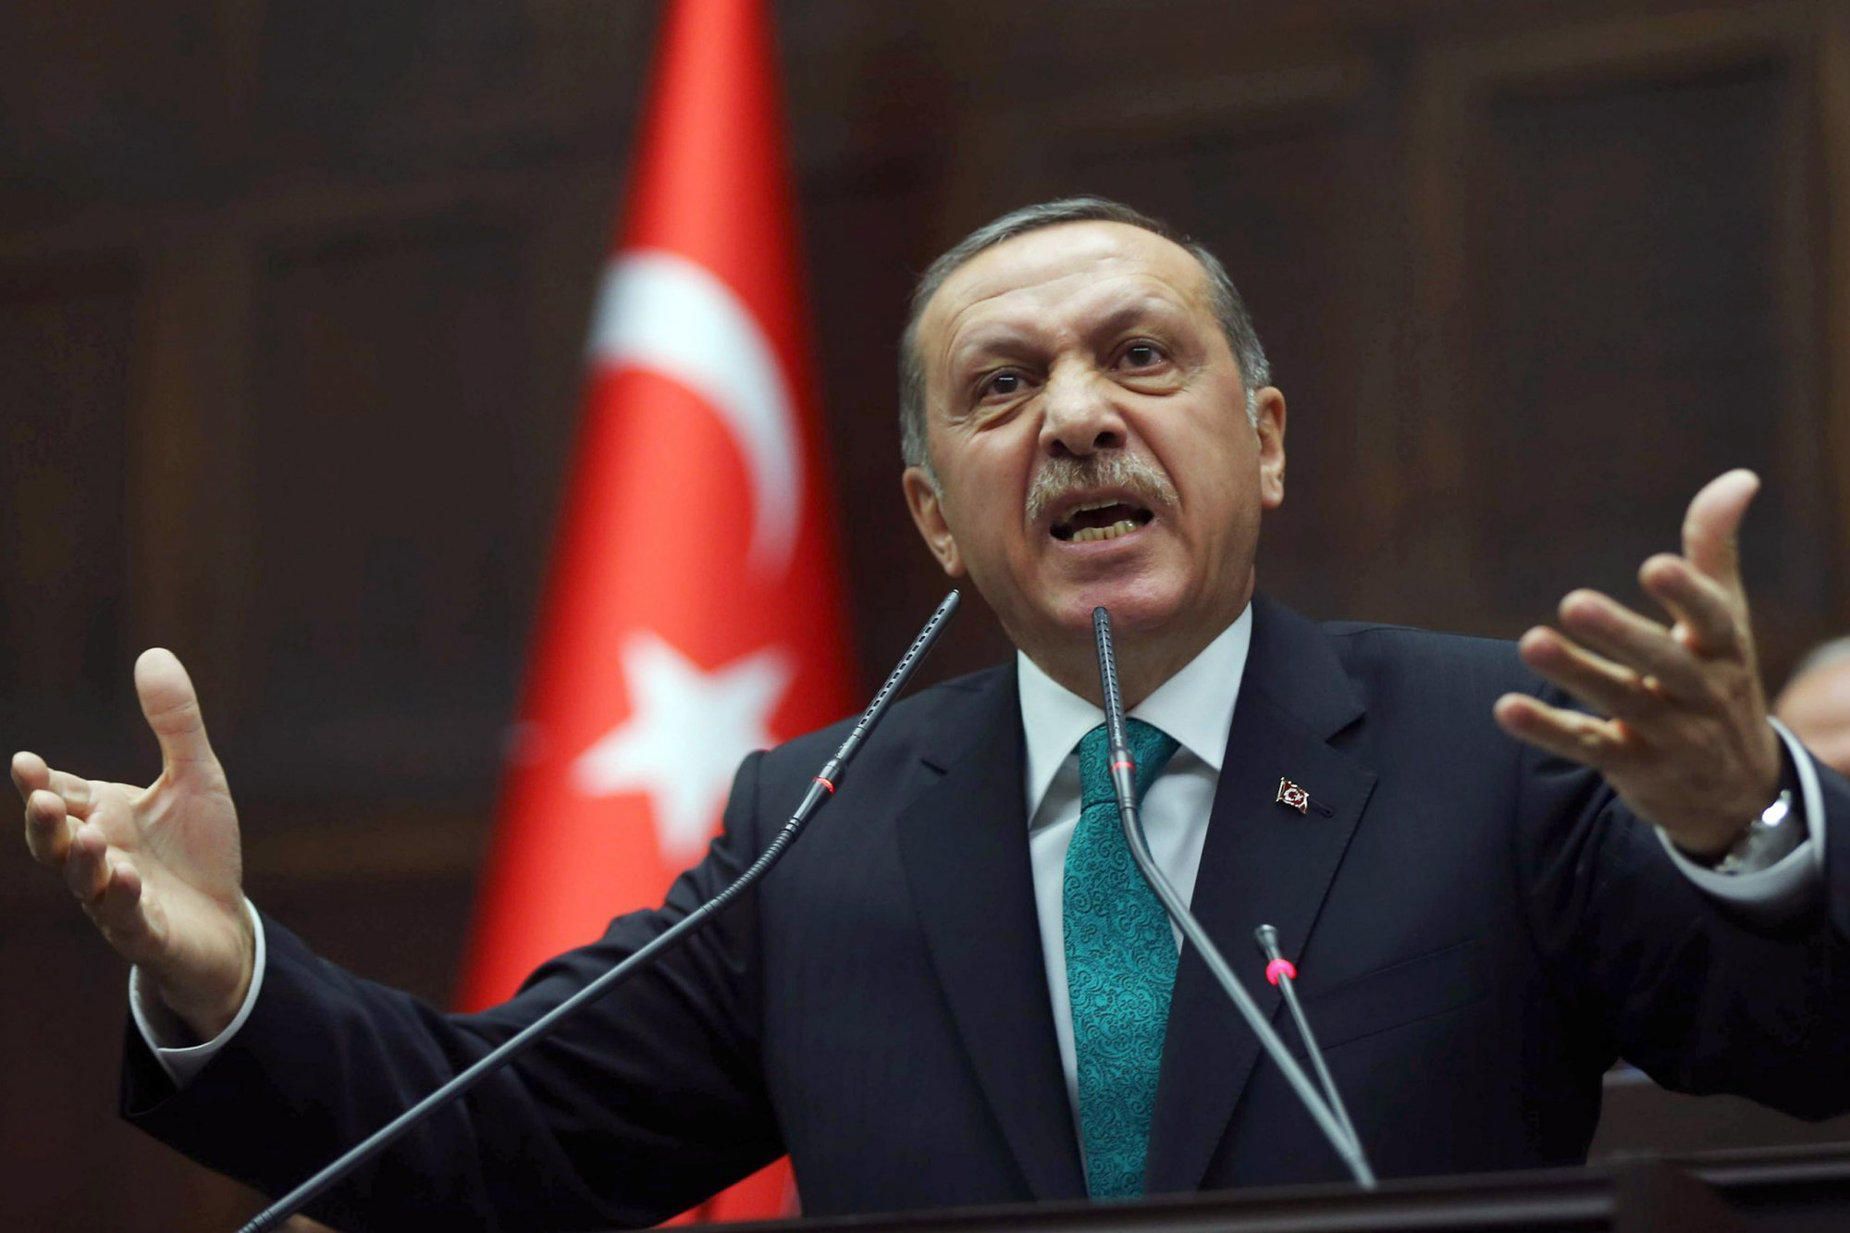 Οι ΗΠΑ «τράβηξαν το τελευταίο χαρτί» για ανατροπή του Ερντογάν: Διάσπαση στο AKP με υπόσχεση για στροφή προς Δύση